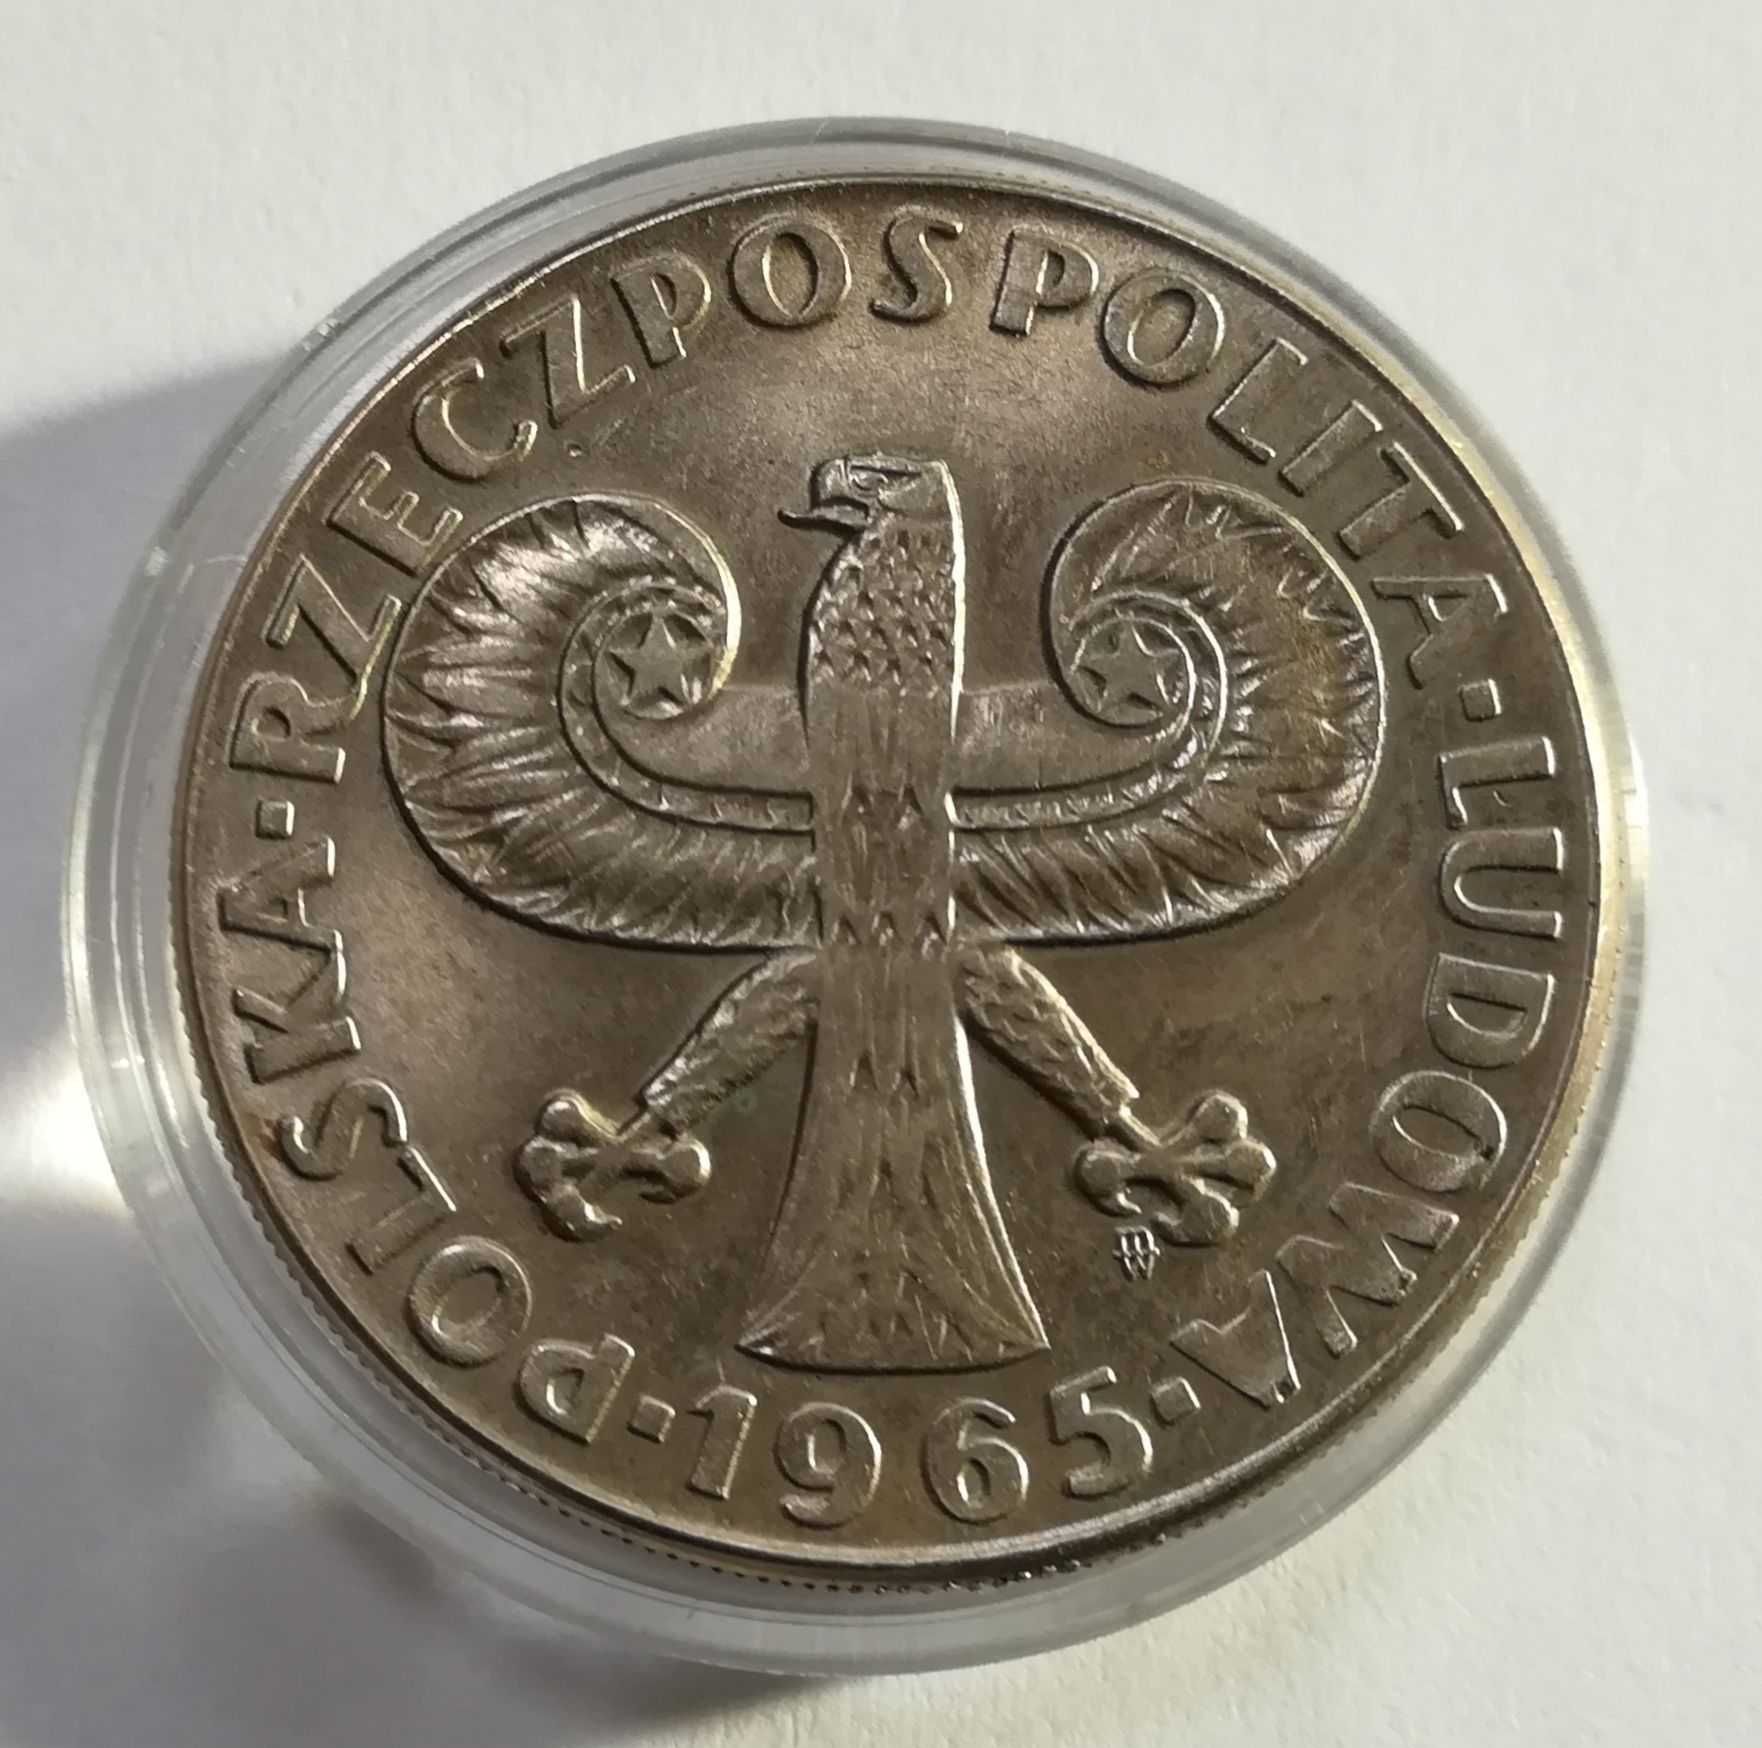 Moneta 10 zł, 1965r. VII wieków Warszawy z ciekawym destruktem,